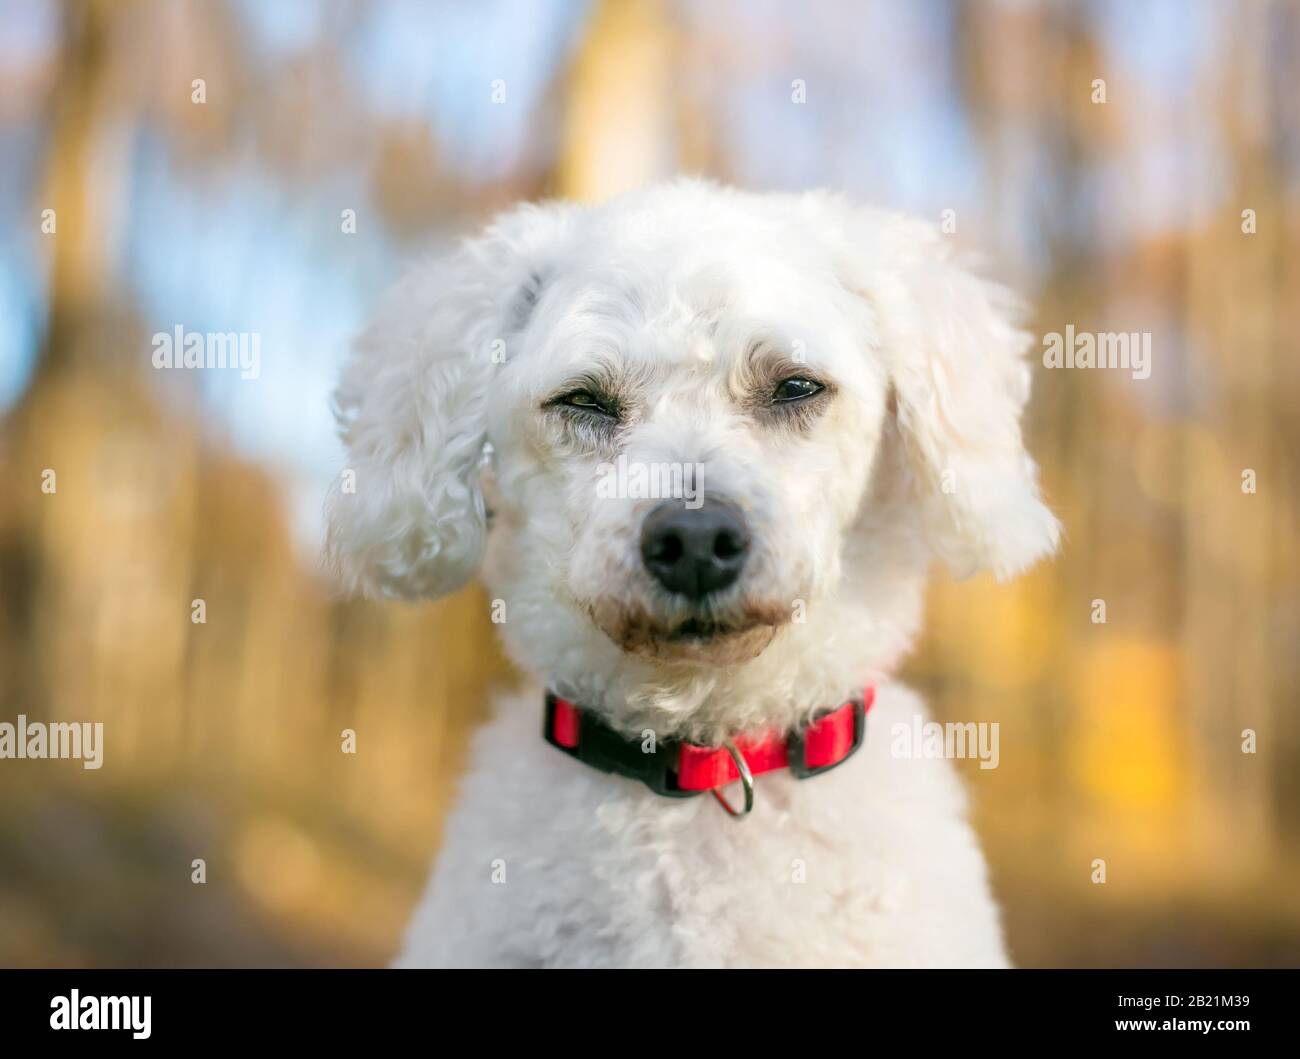 Un cane di razza mista bianco miniatura Poodle schiacciando i suoi occhi con un'espressione annoiata o assonnata Foto Stock